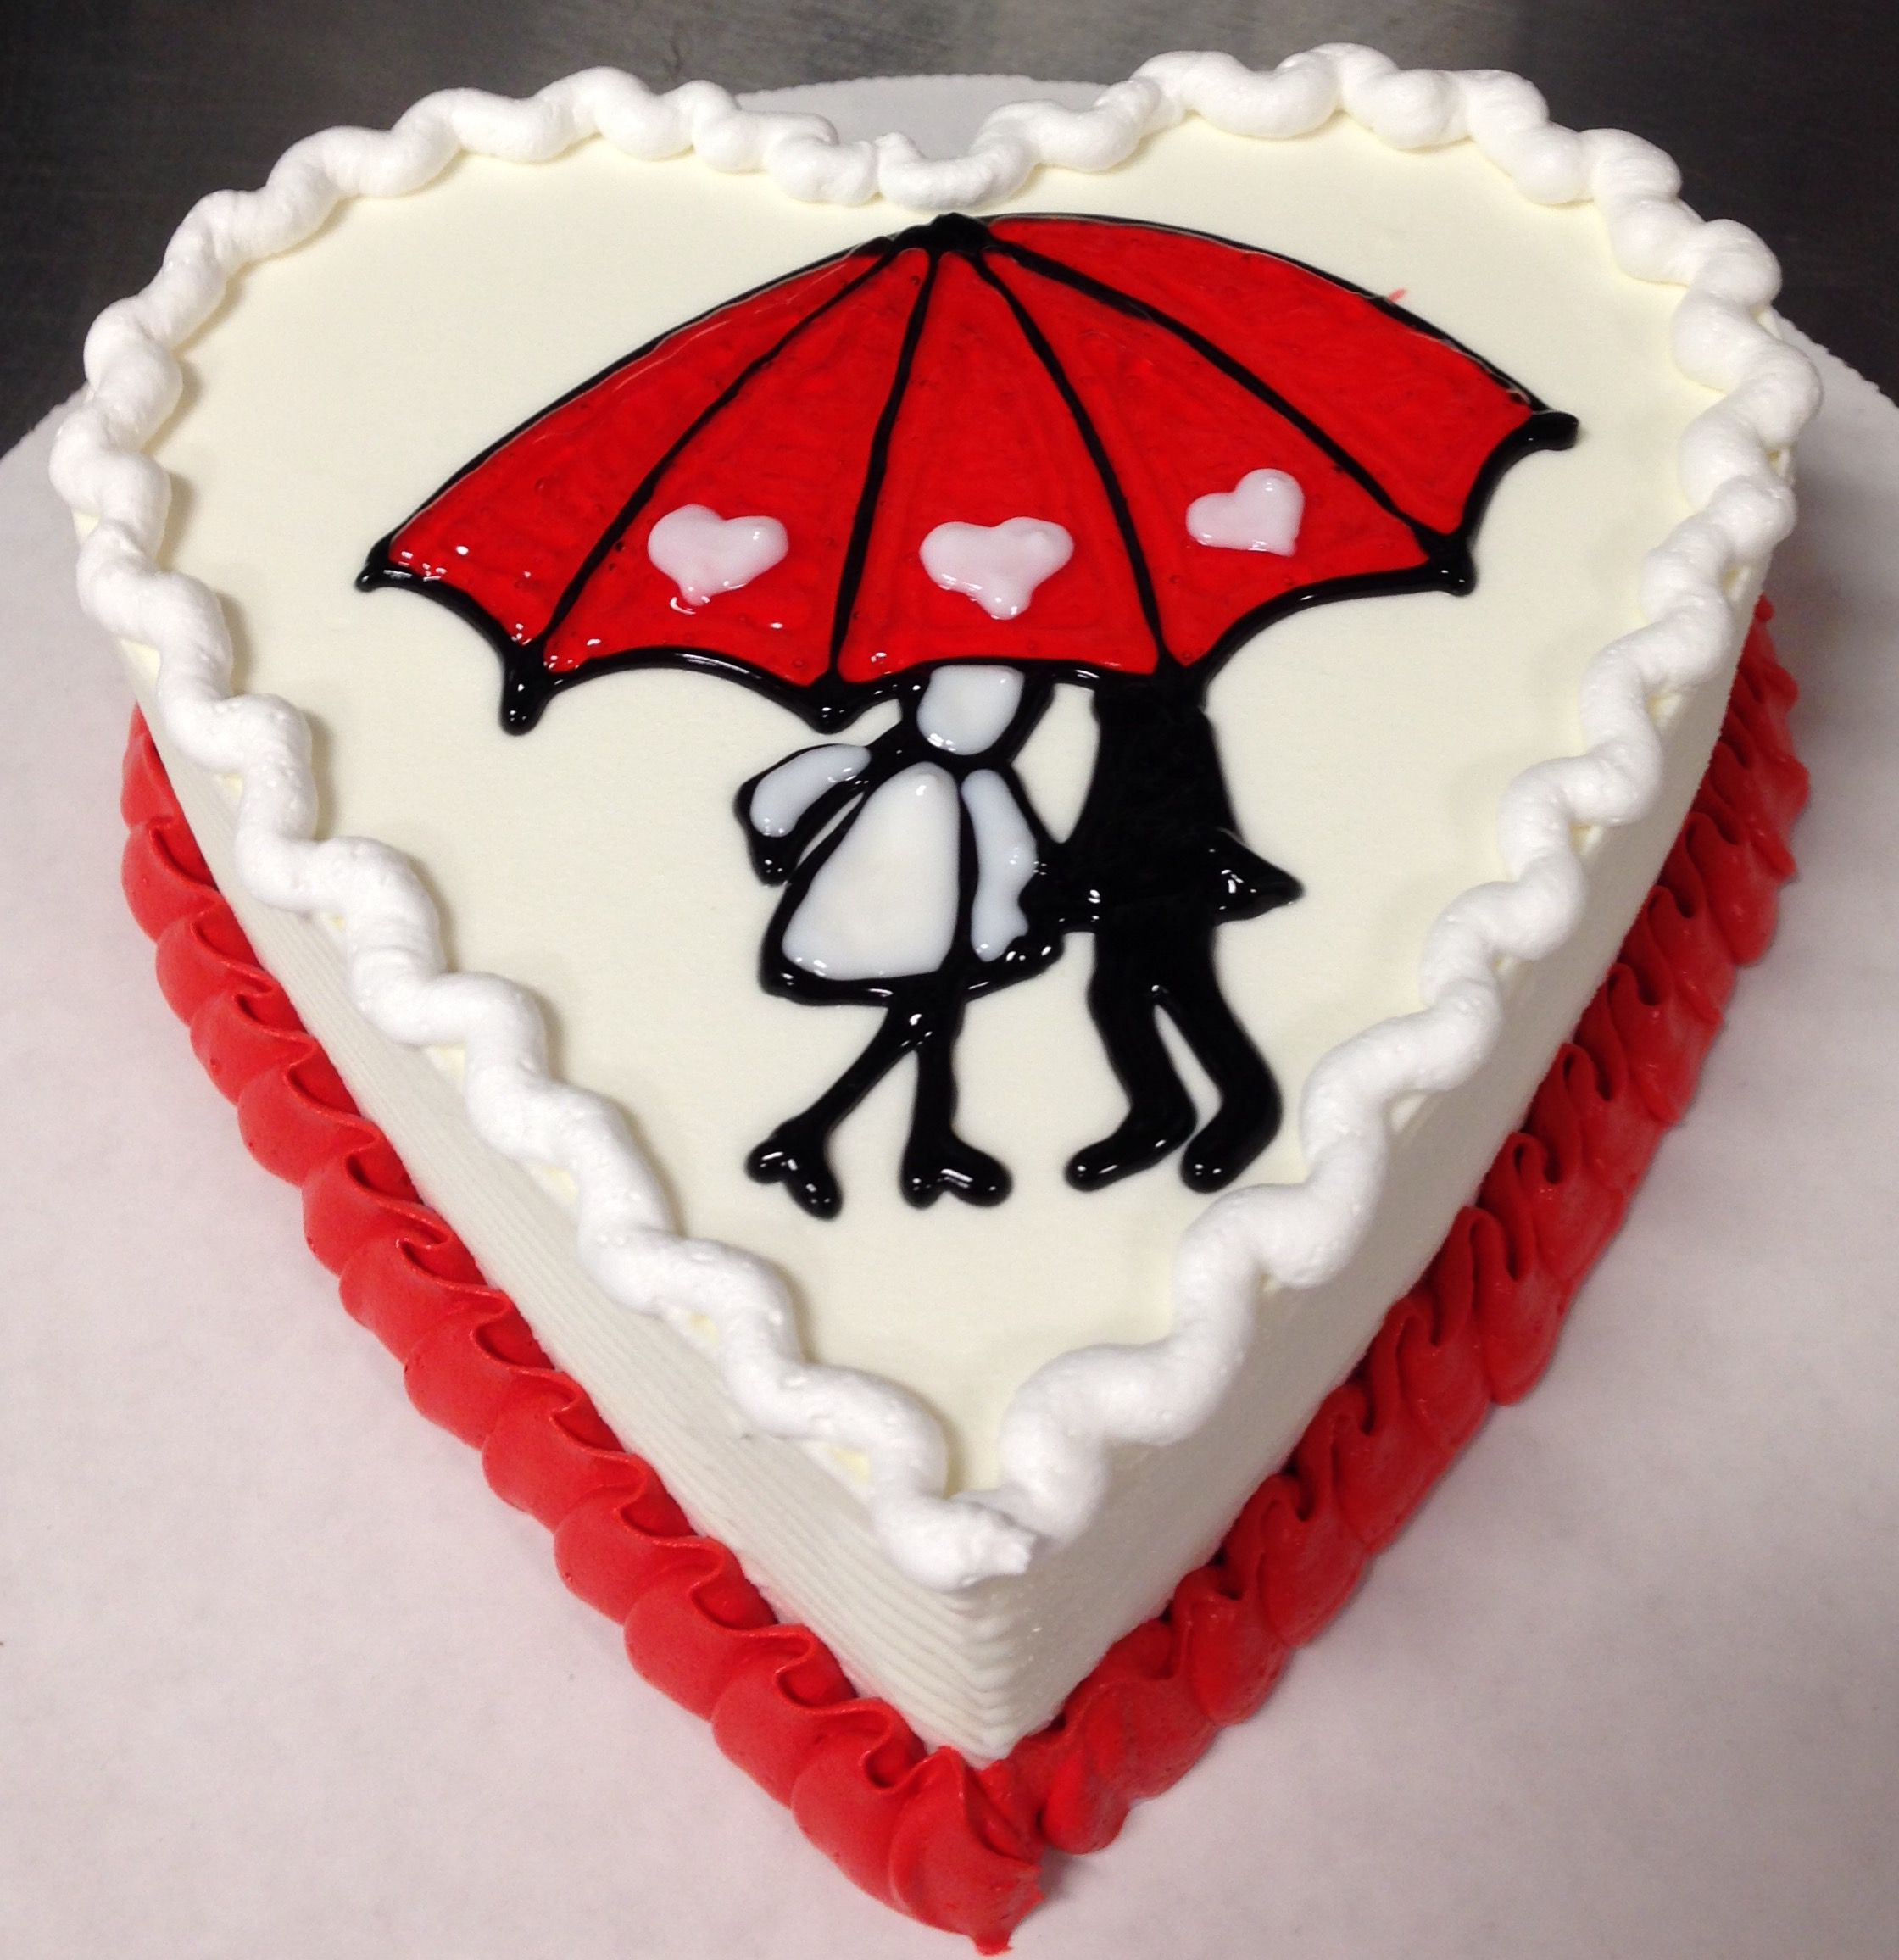 Lover's Heart Cake